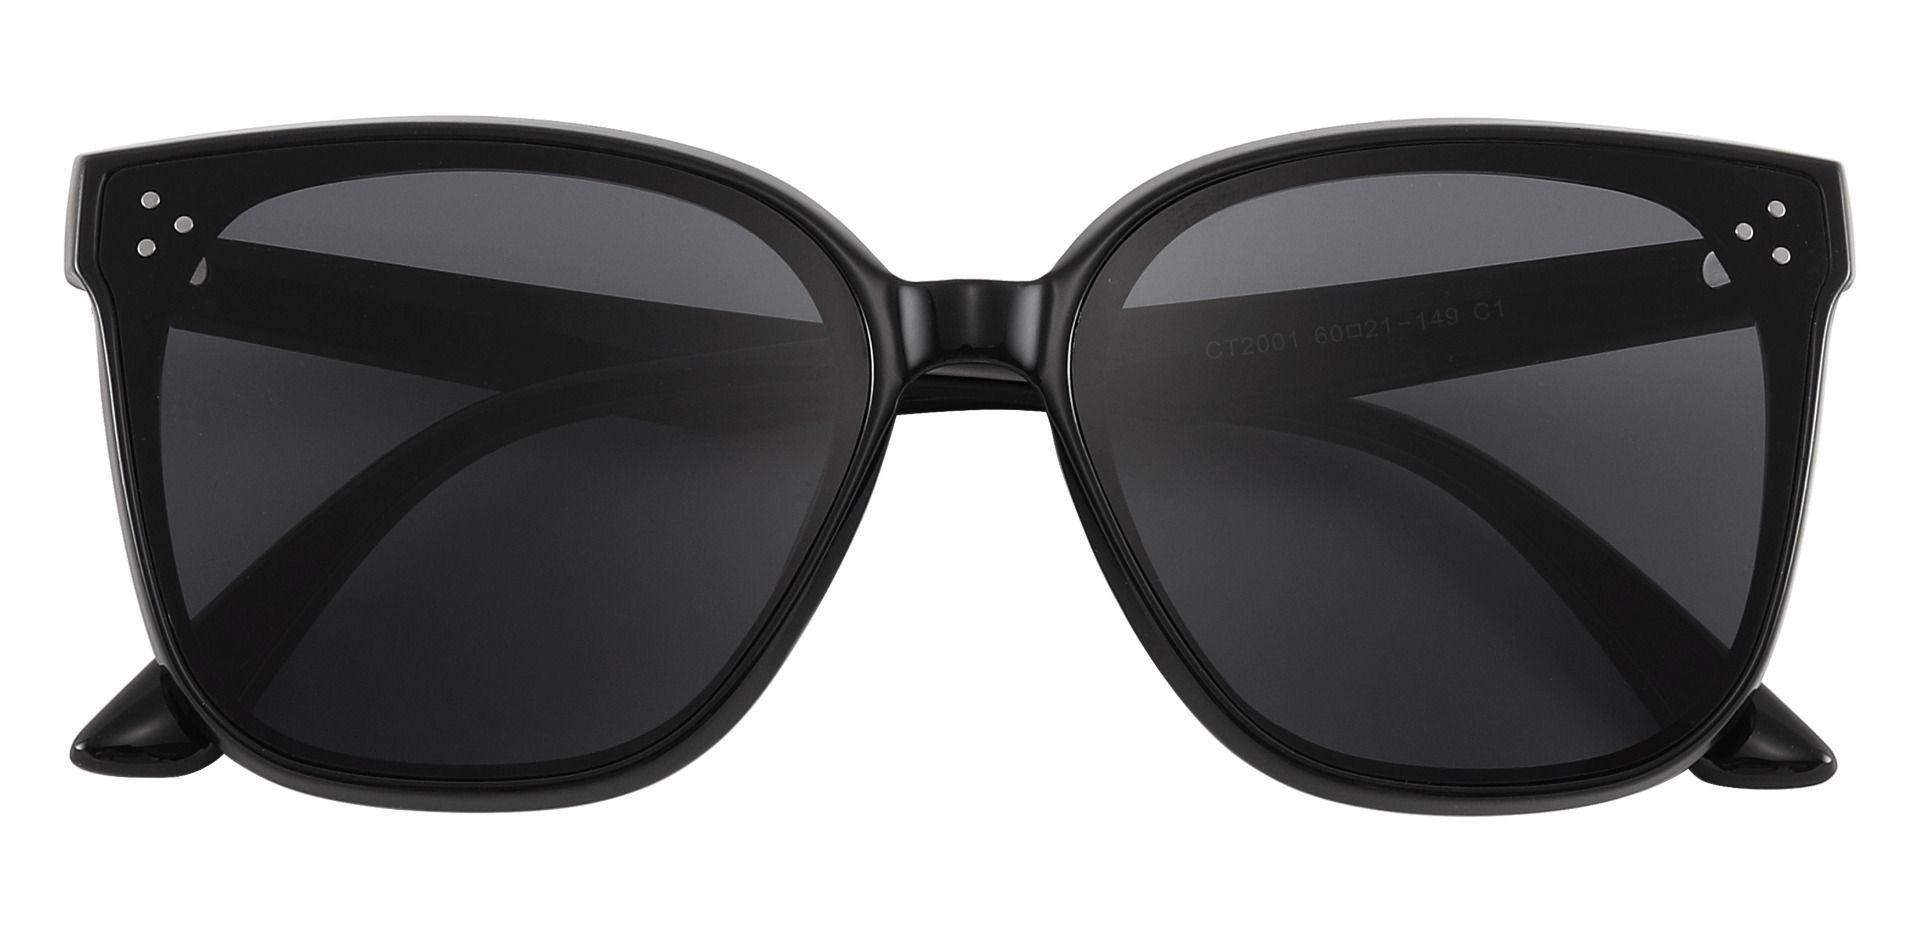 Rabia Square Black Non-Rx Sunglasses